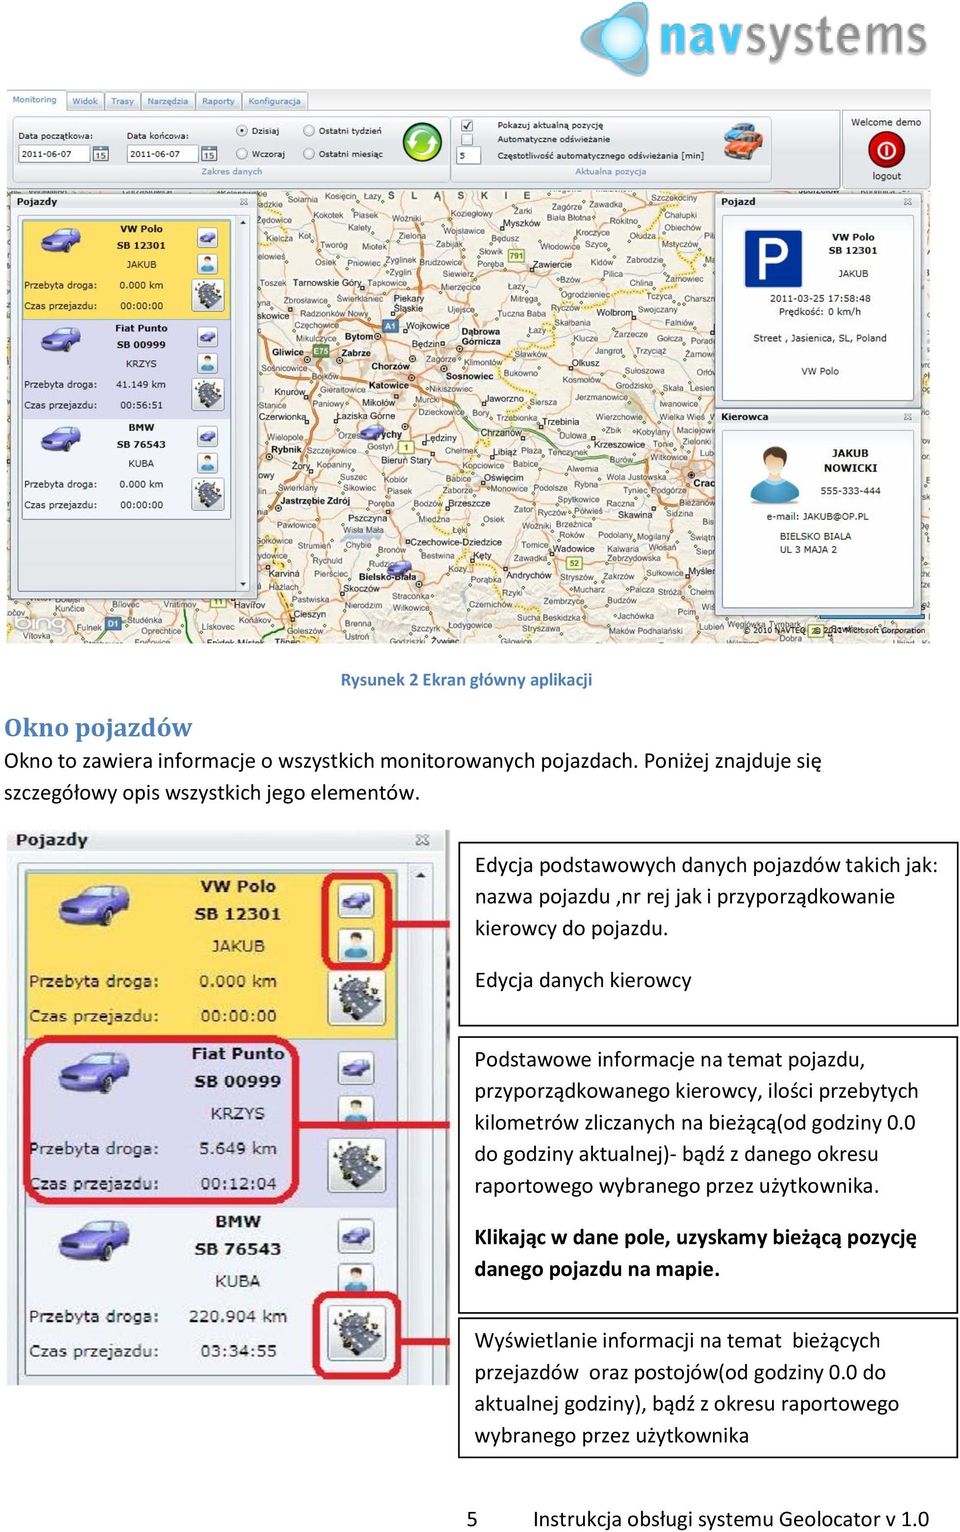 Edycja danych kierowcy Podstawowe informacje na temat pojazdu, przyporządkowanego kierowcy, ilości przebytych kilometrów zliczanych na bieżącą(od godziny 0.